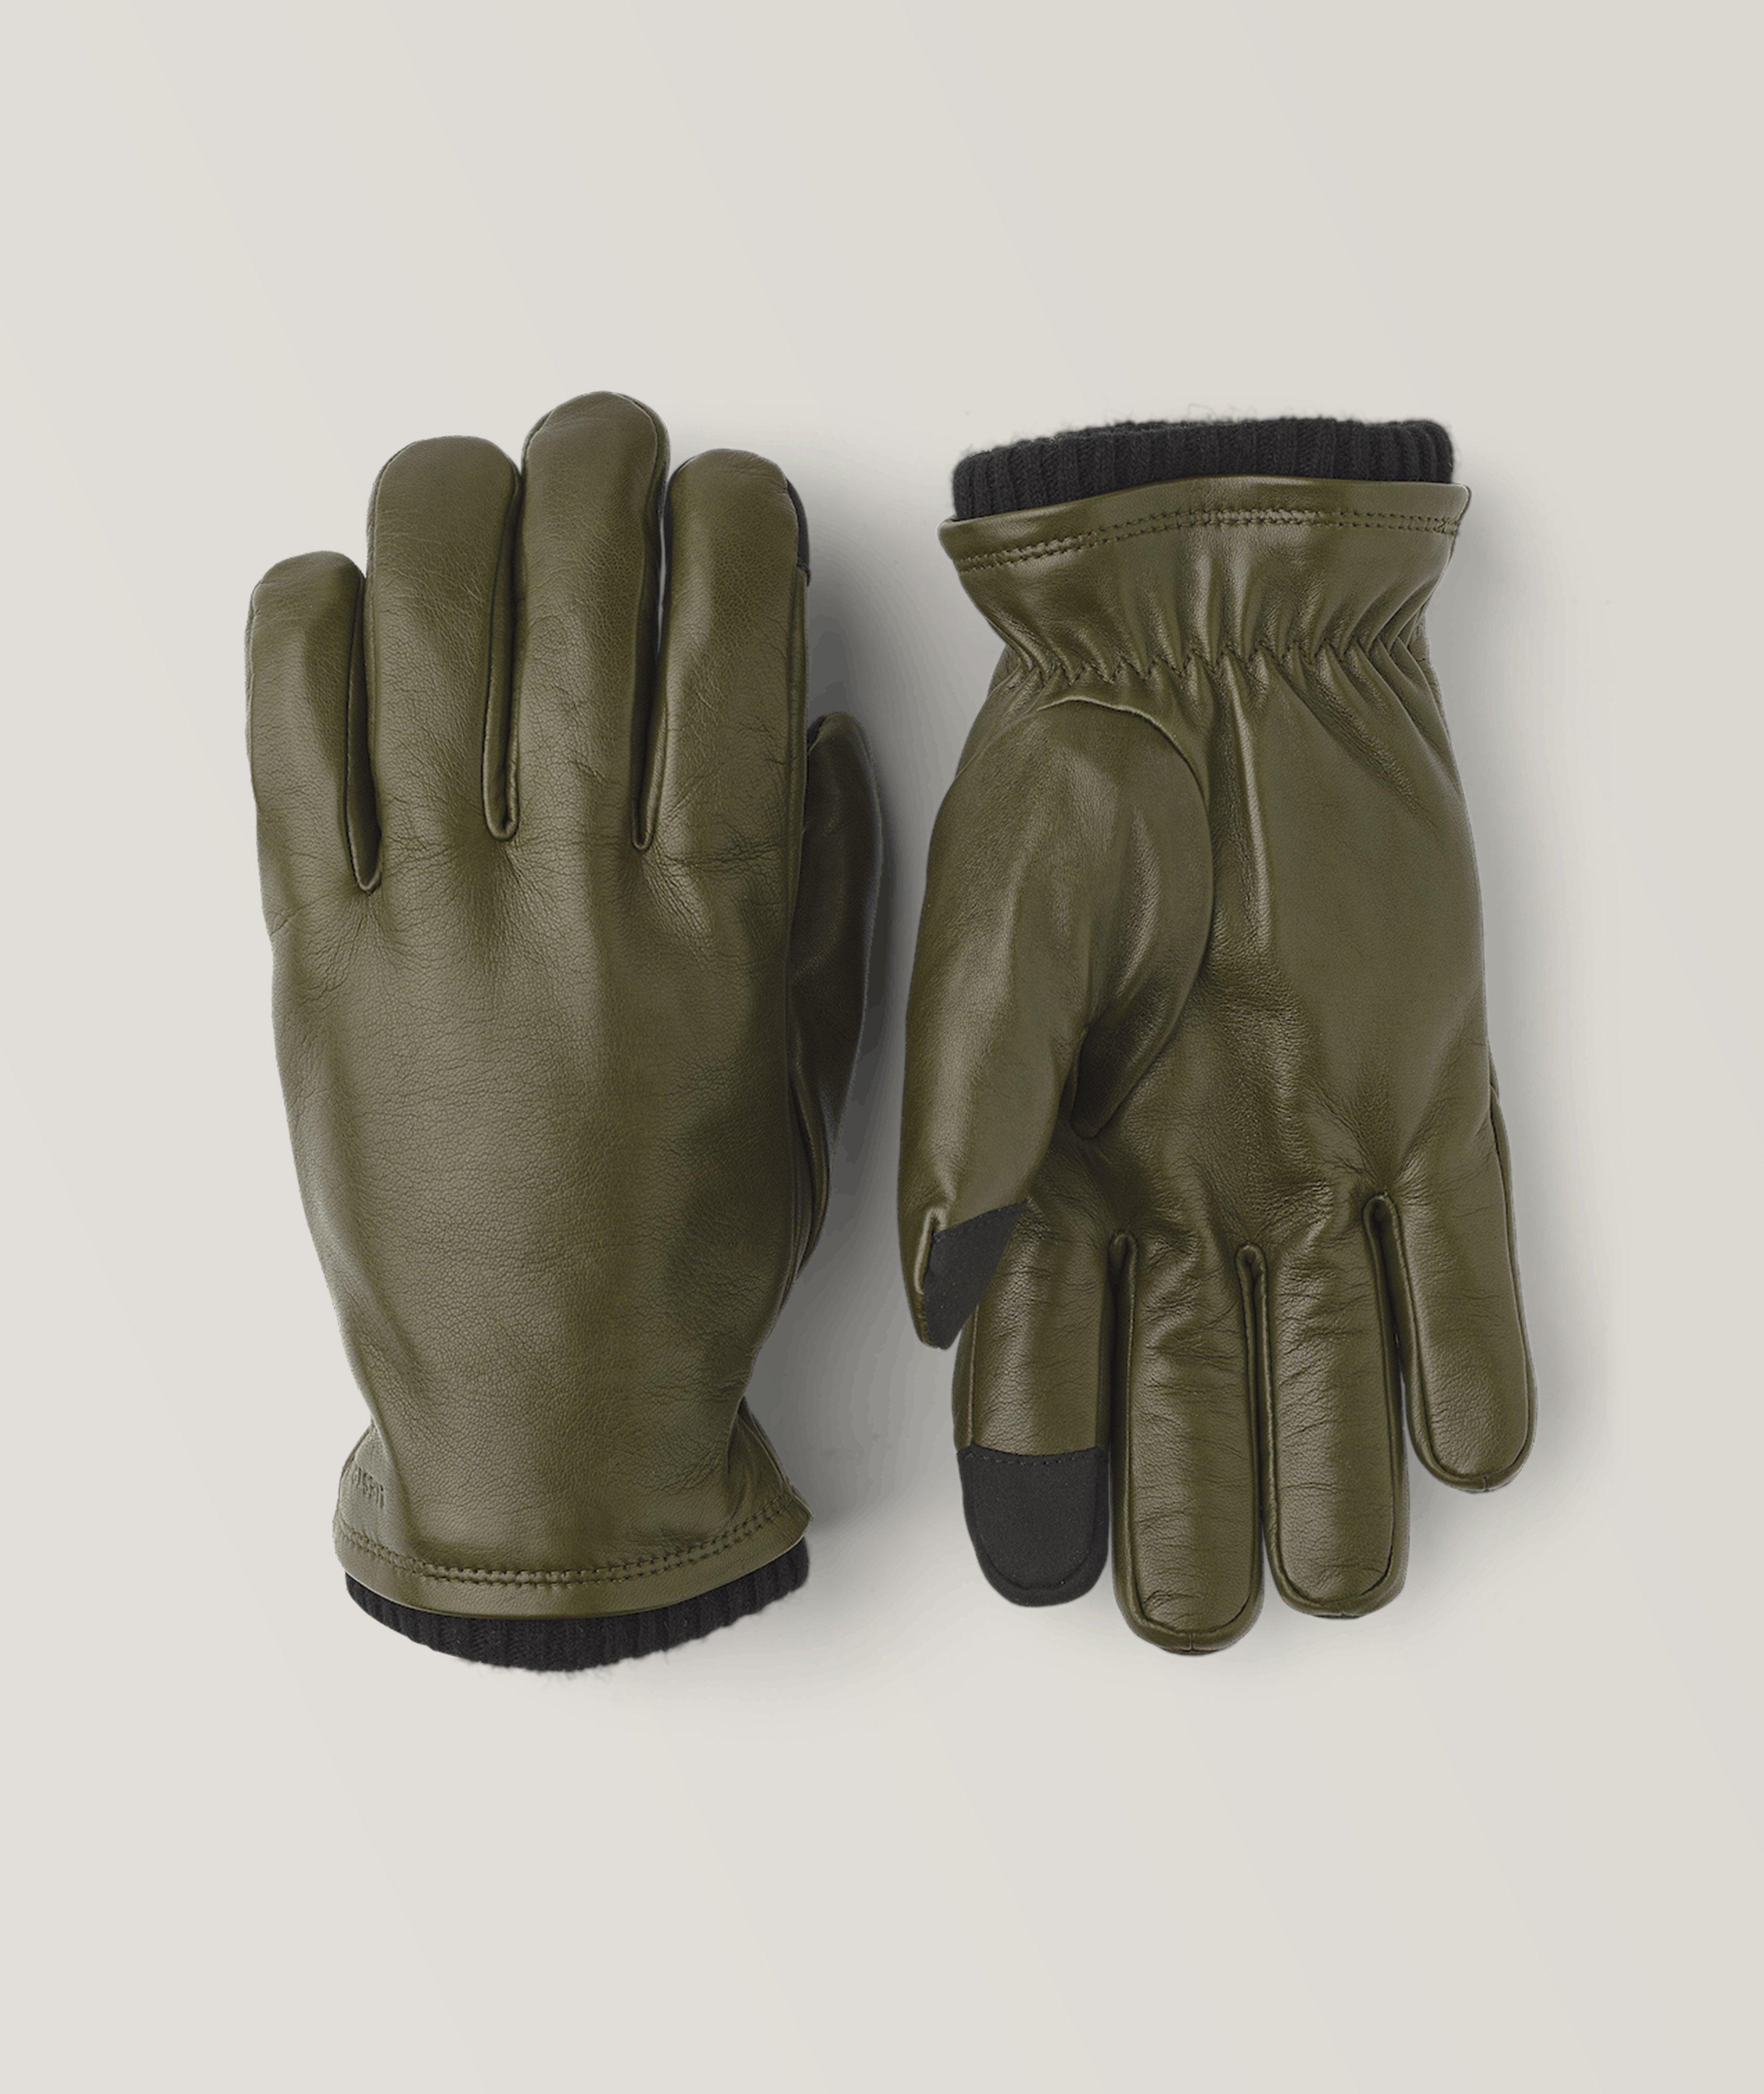 John Leather Gloves